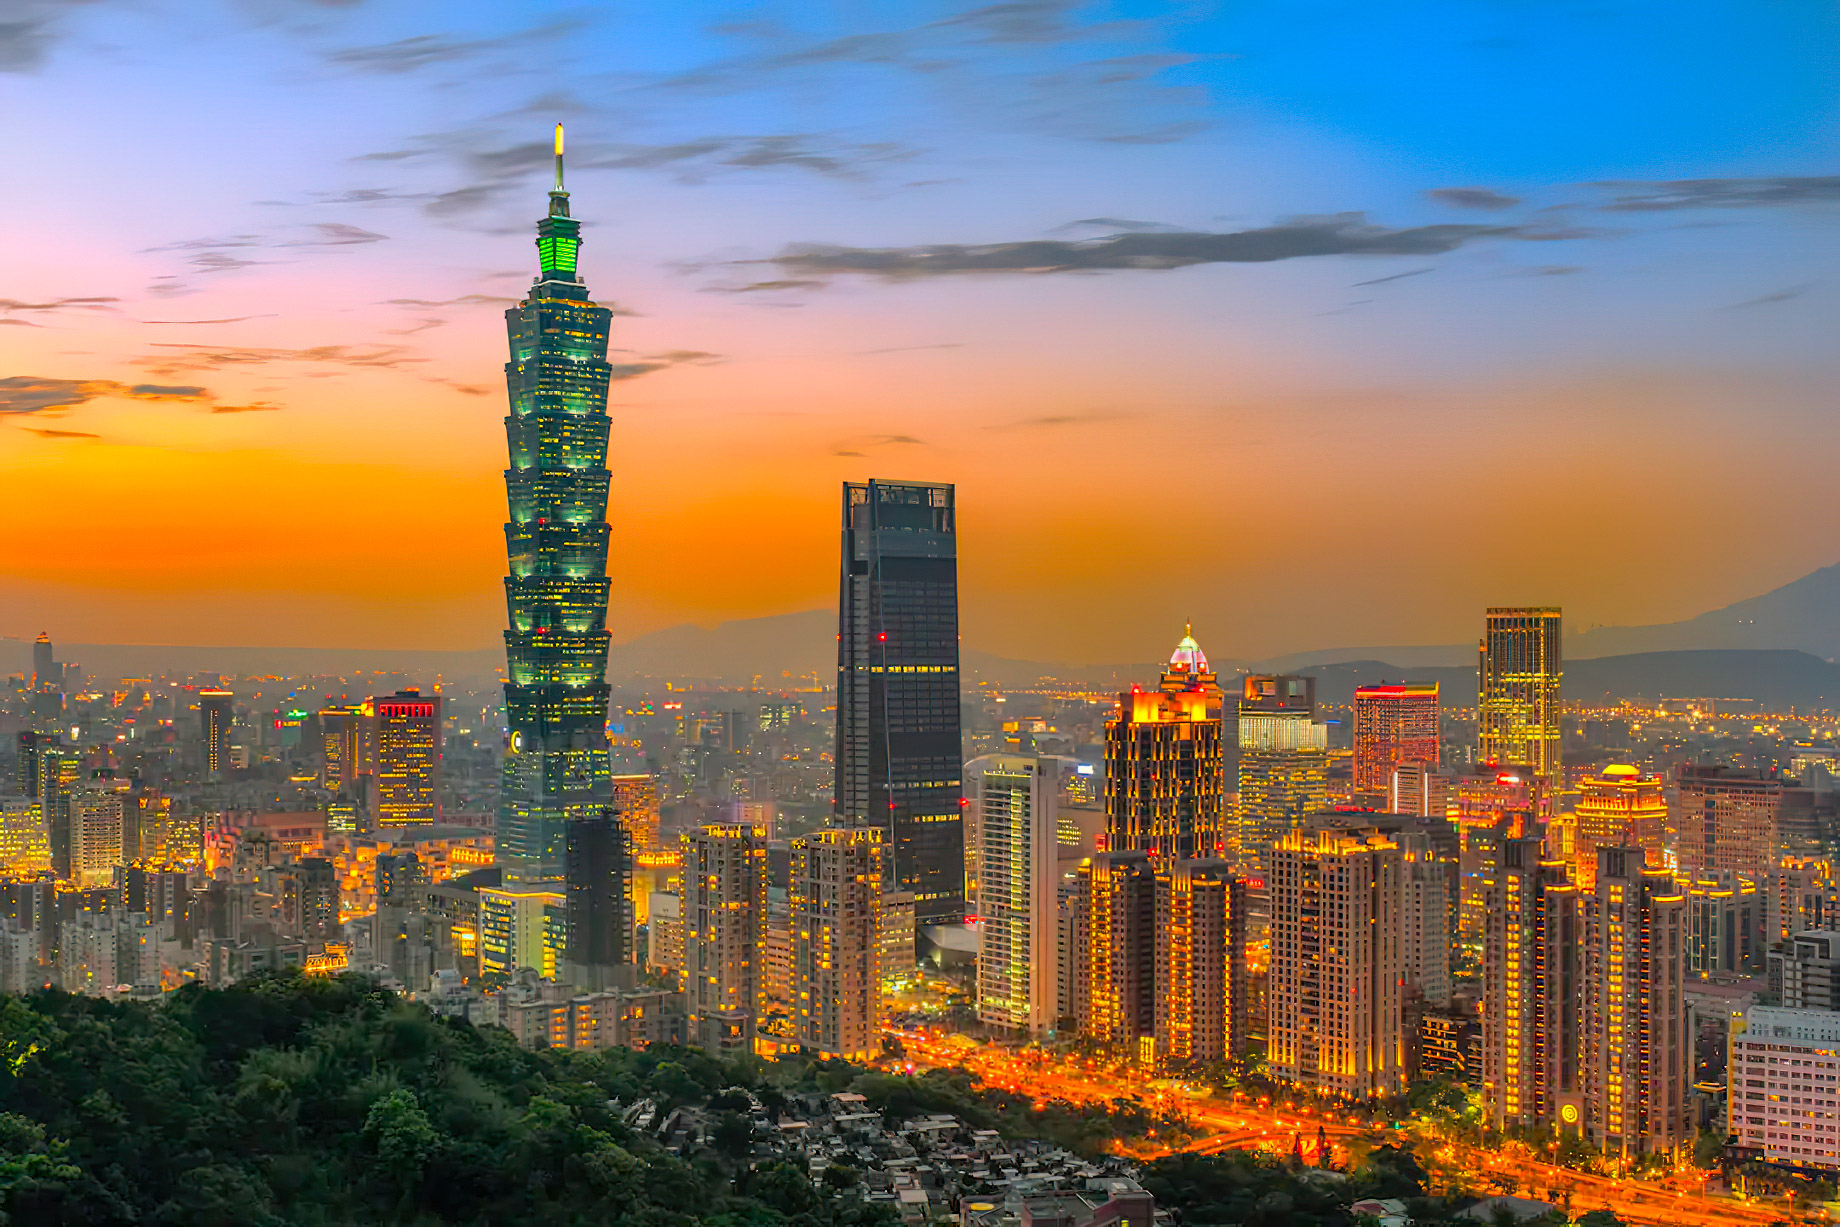 Mandarin Oriental, Taipei, Hotel – Taipei, Taiwan – City Skyline View Sunset